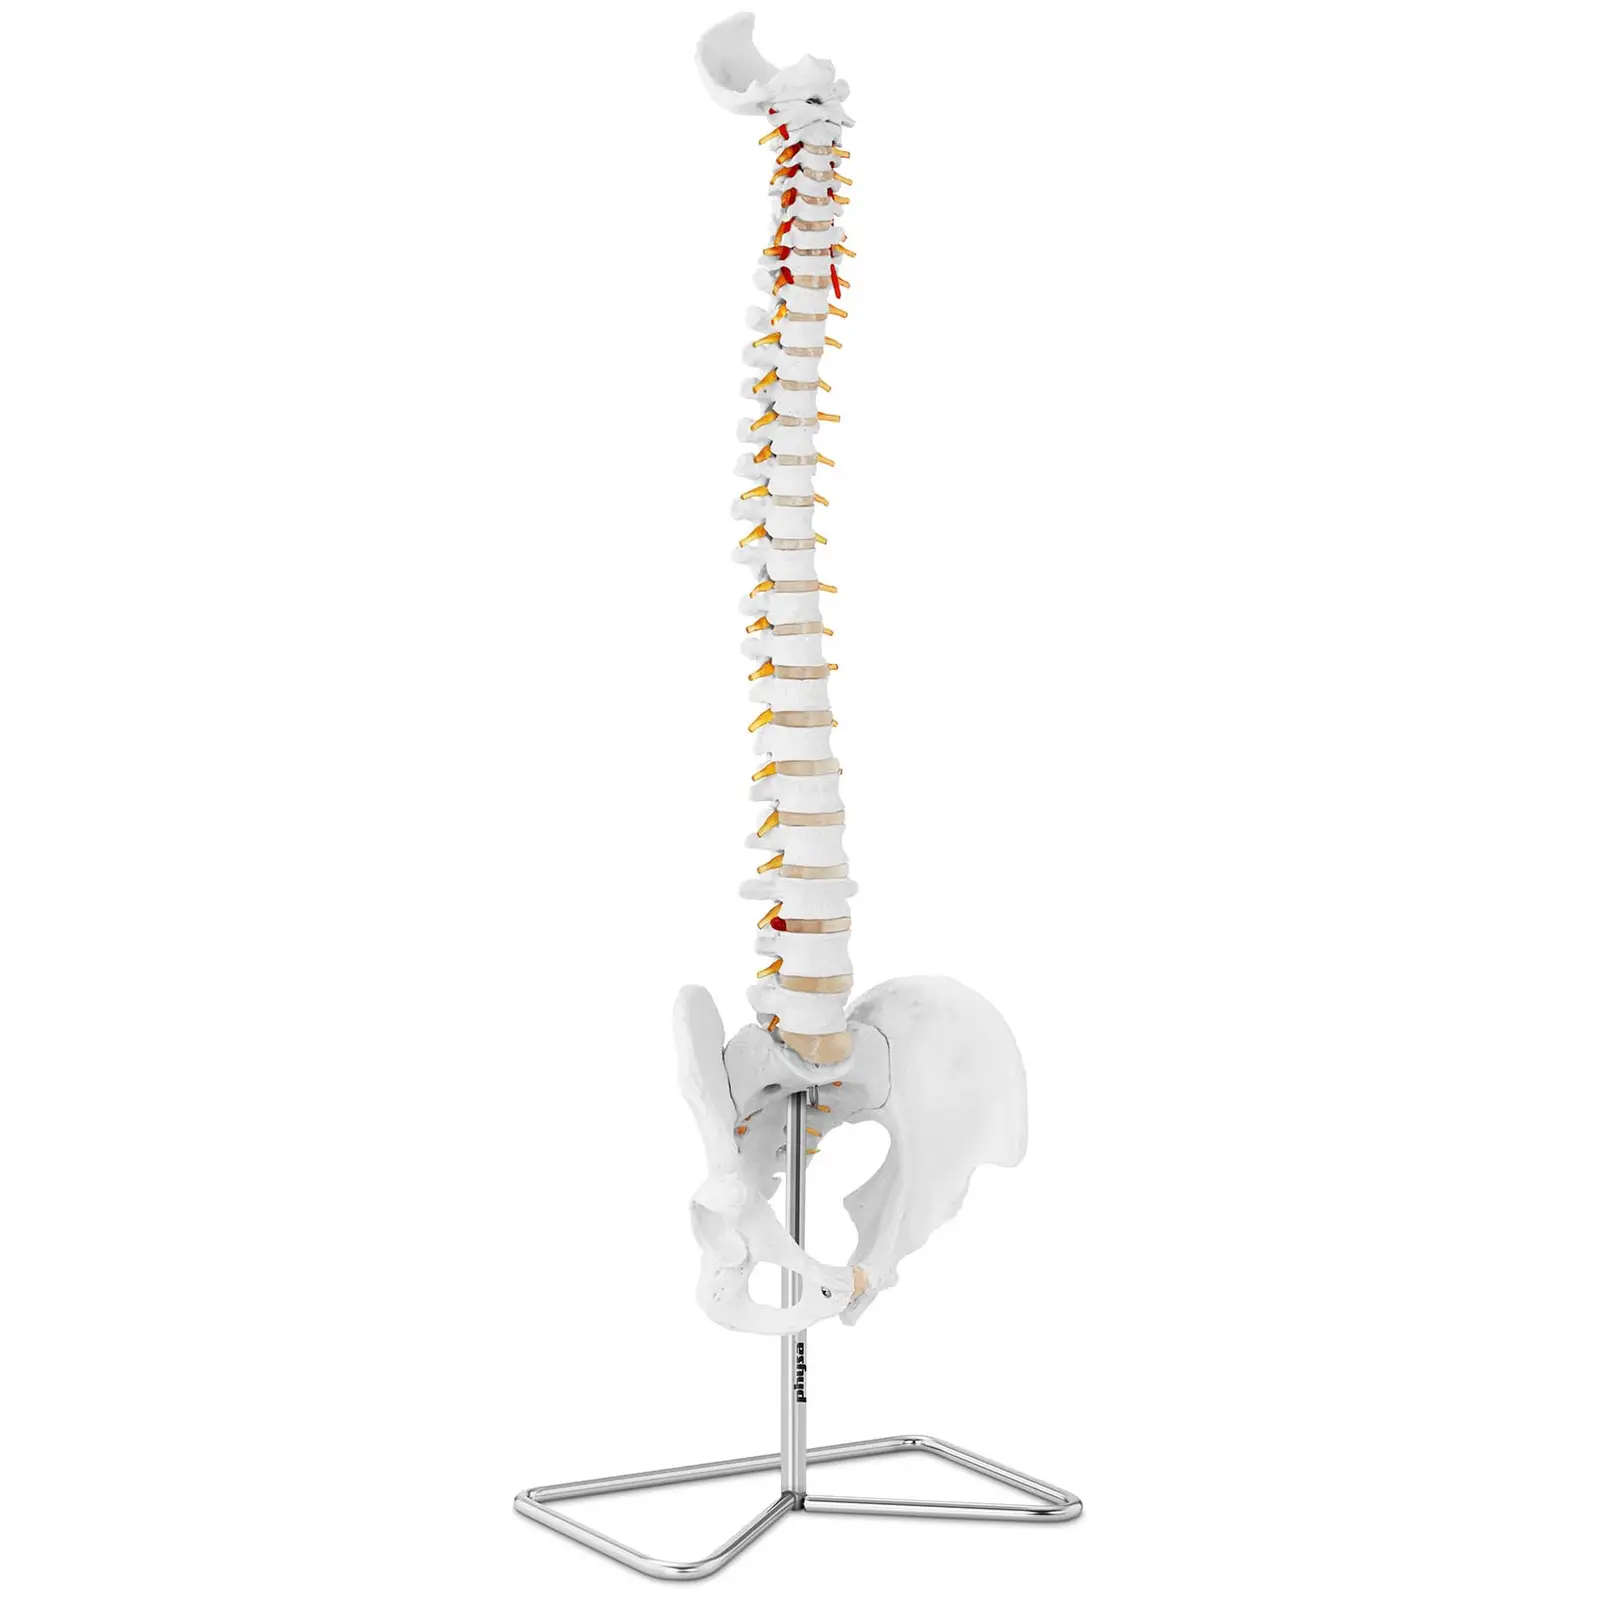 Anatominen malli - selkäranka - luonnollisessa koossa